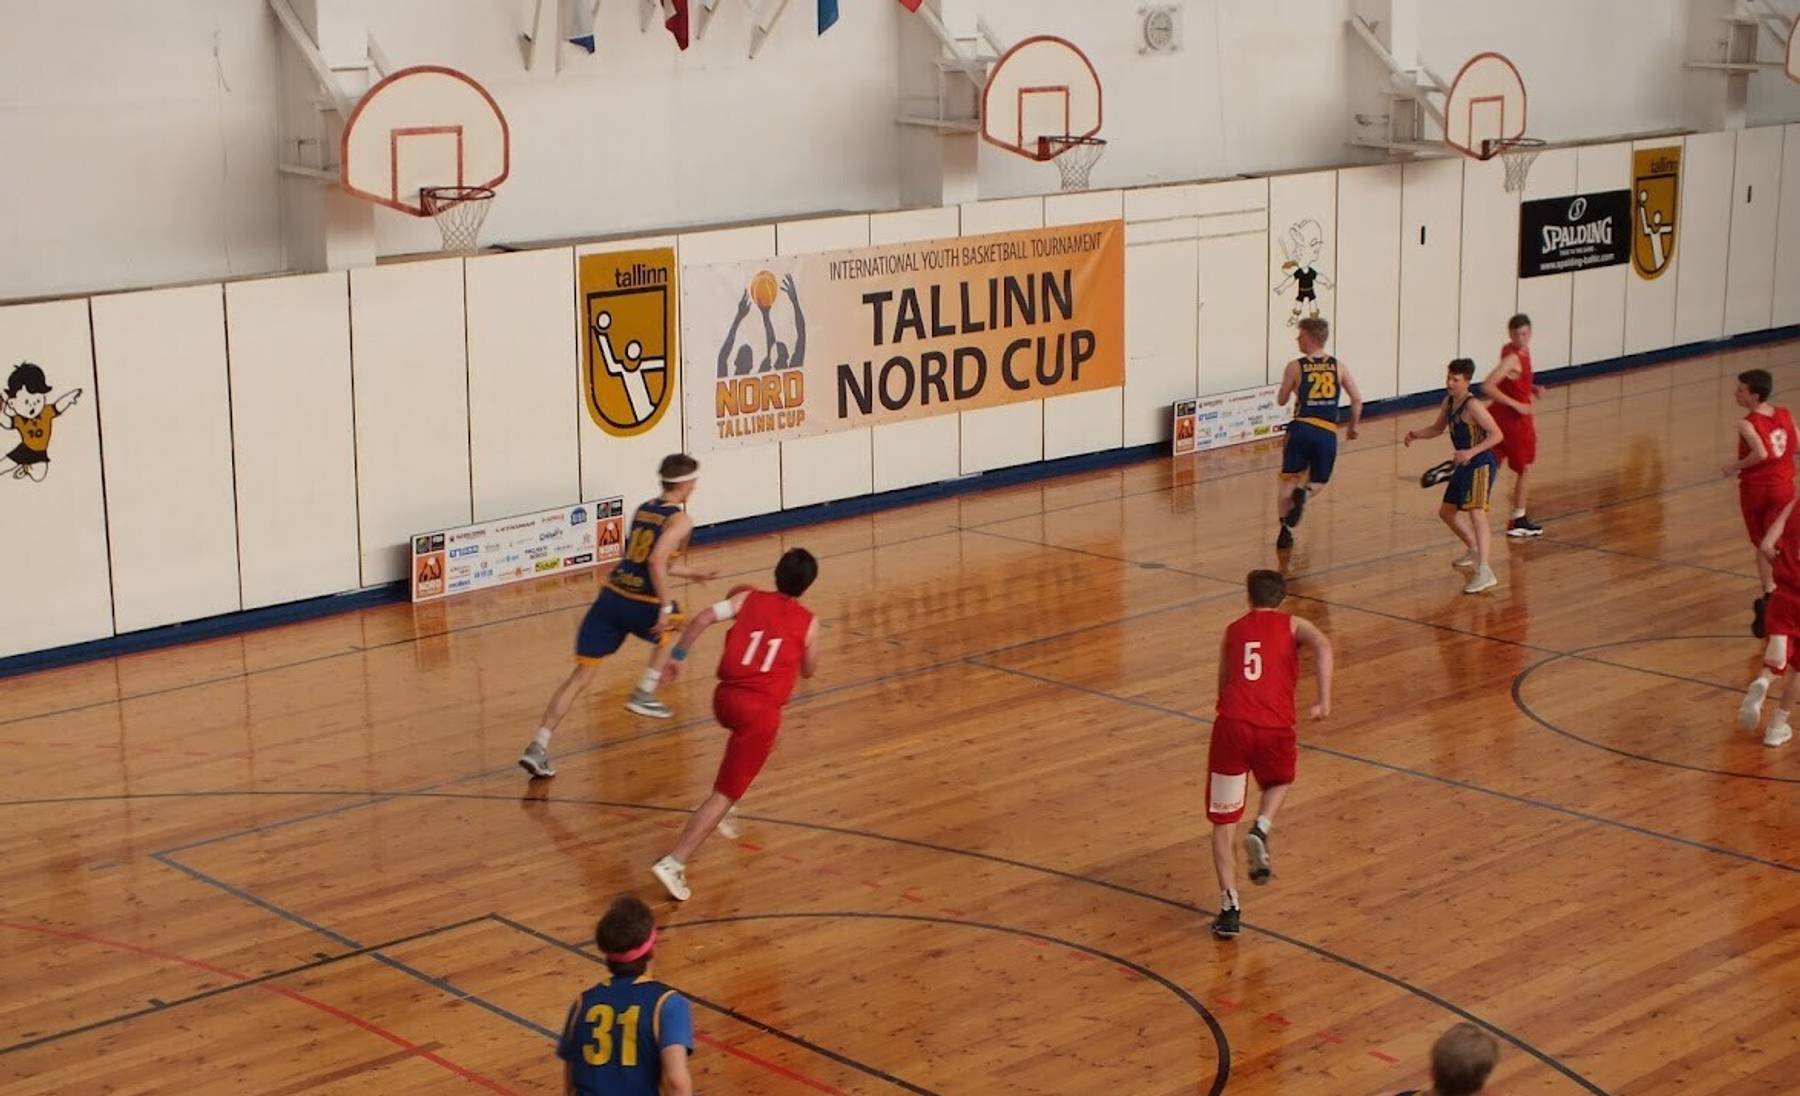 Tallinn Nord Cup